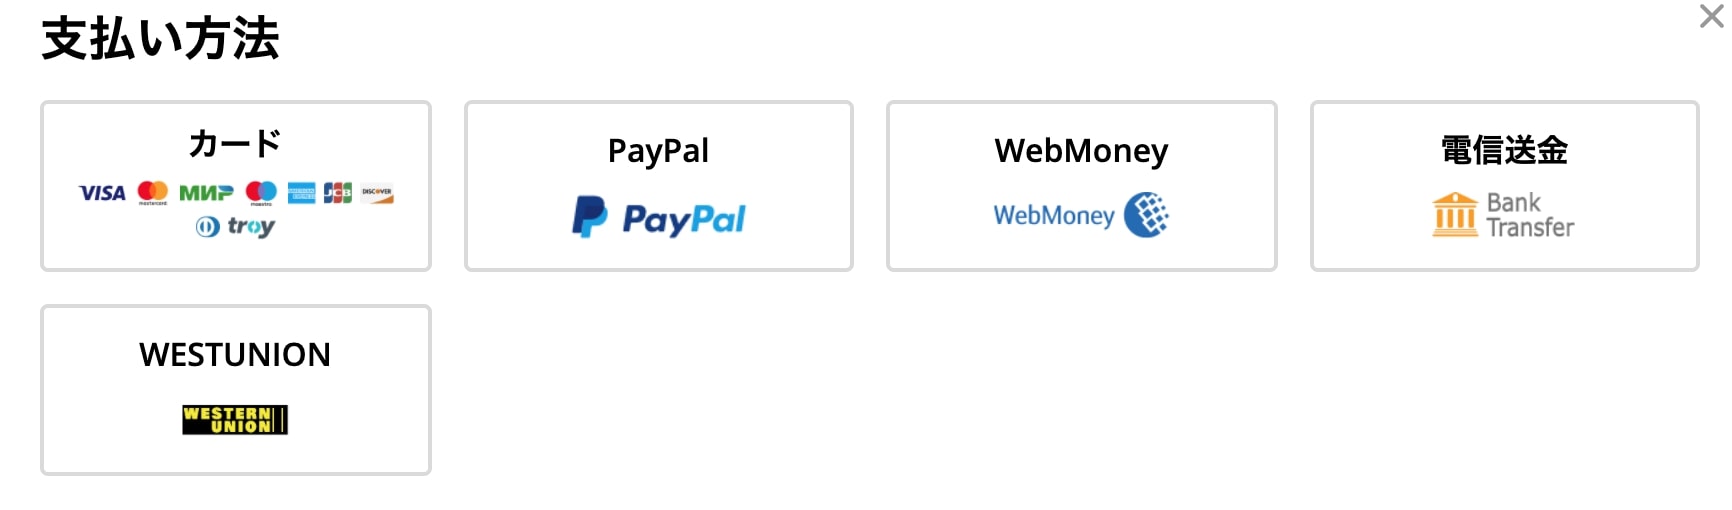 AliExpressの支払い方法
各種クレジットカード
PayPal（ペイパル）
WebMoney
電信送金
WESTUNION